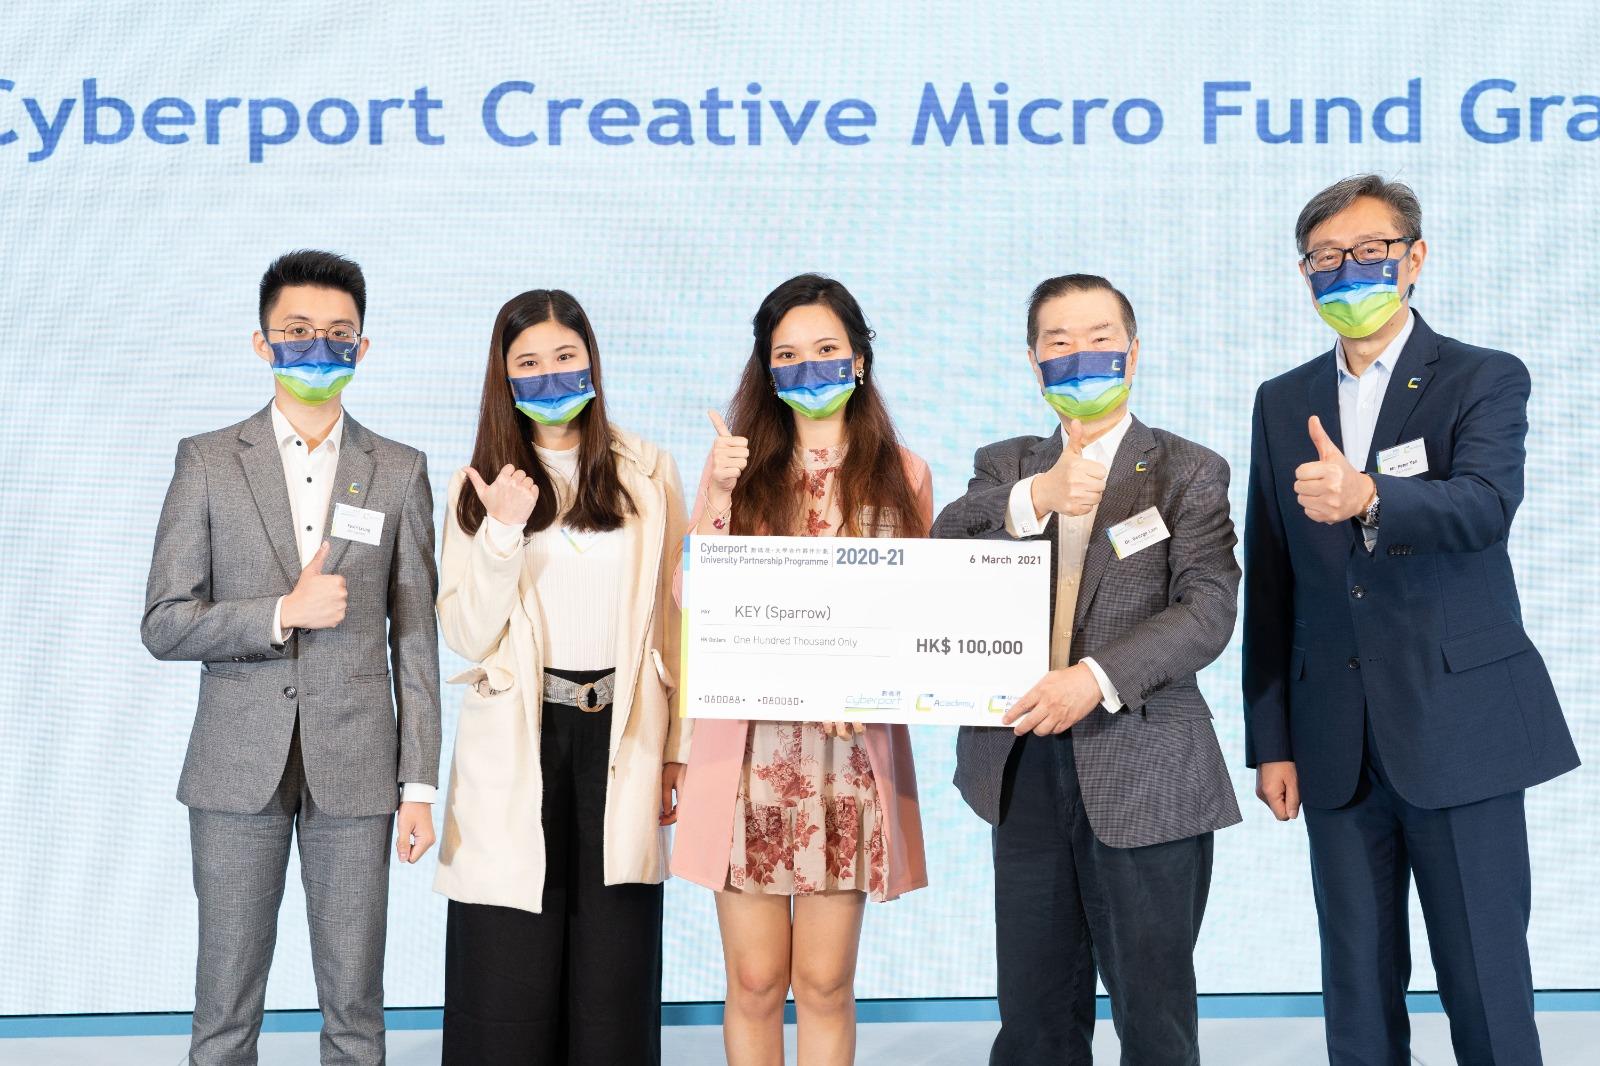 Kevin（左一）撰写的个人财政预算应用程式「Sparrow」赢得「数码港创意微型基金」的十万元资助。